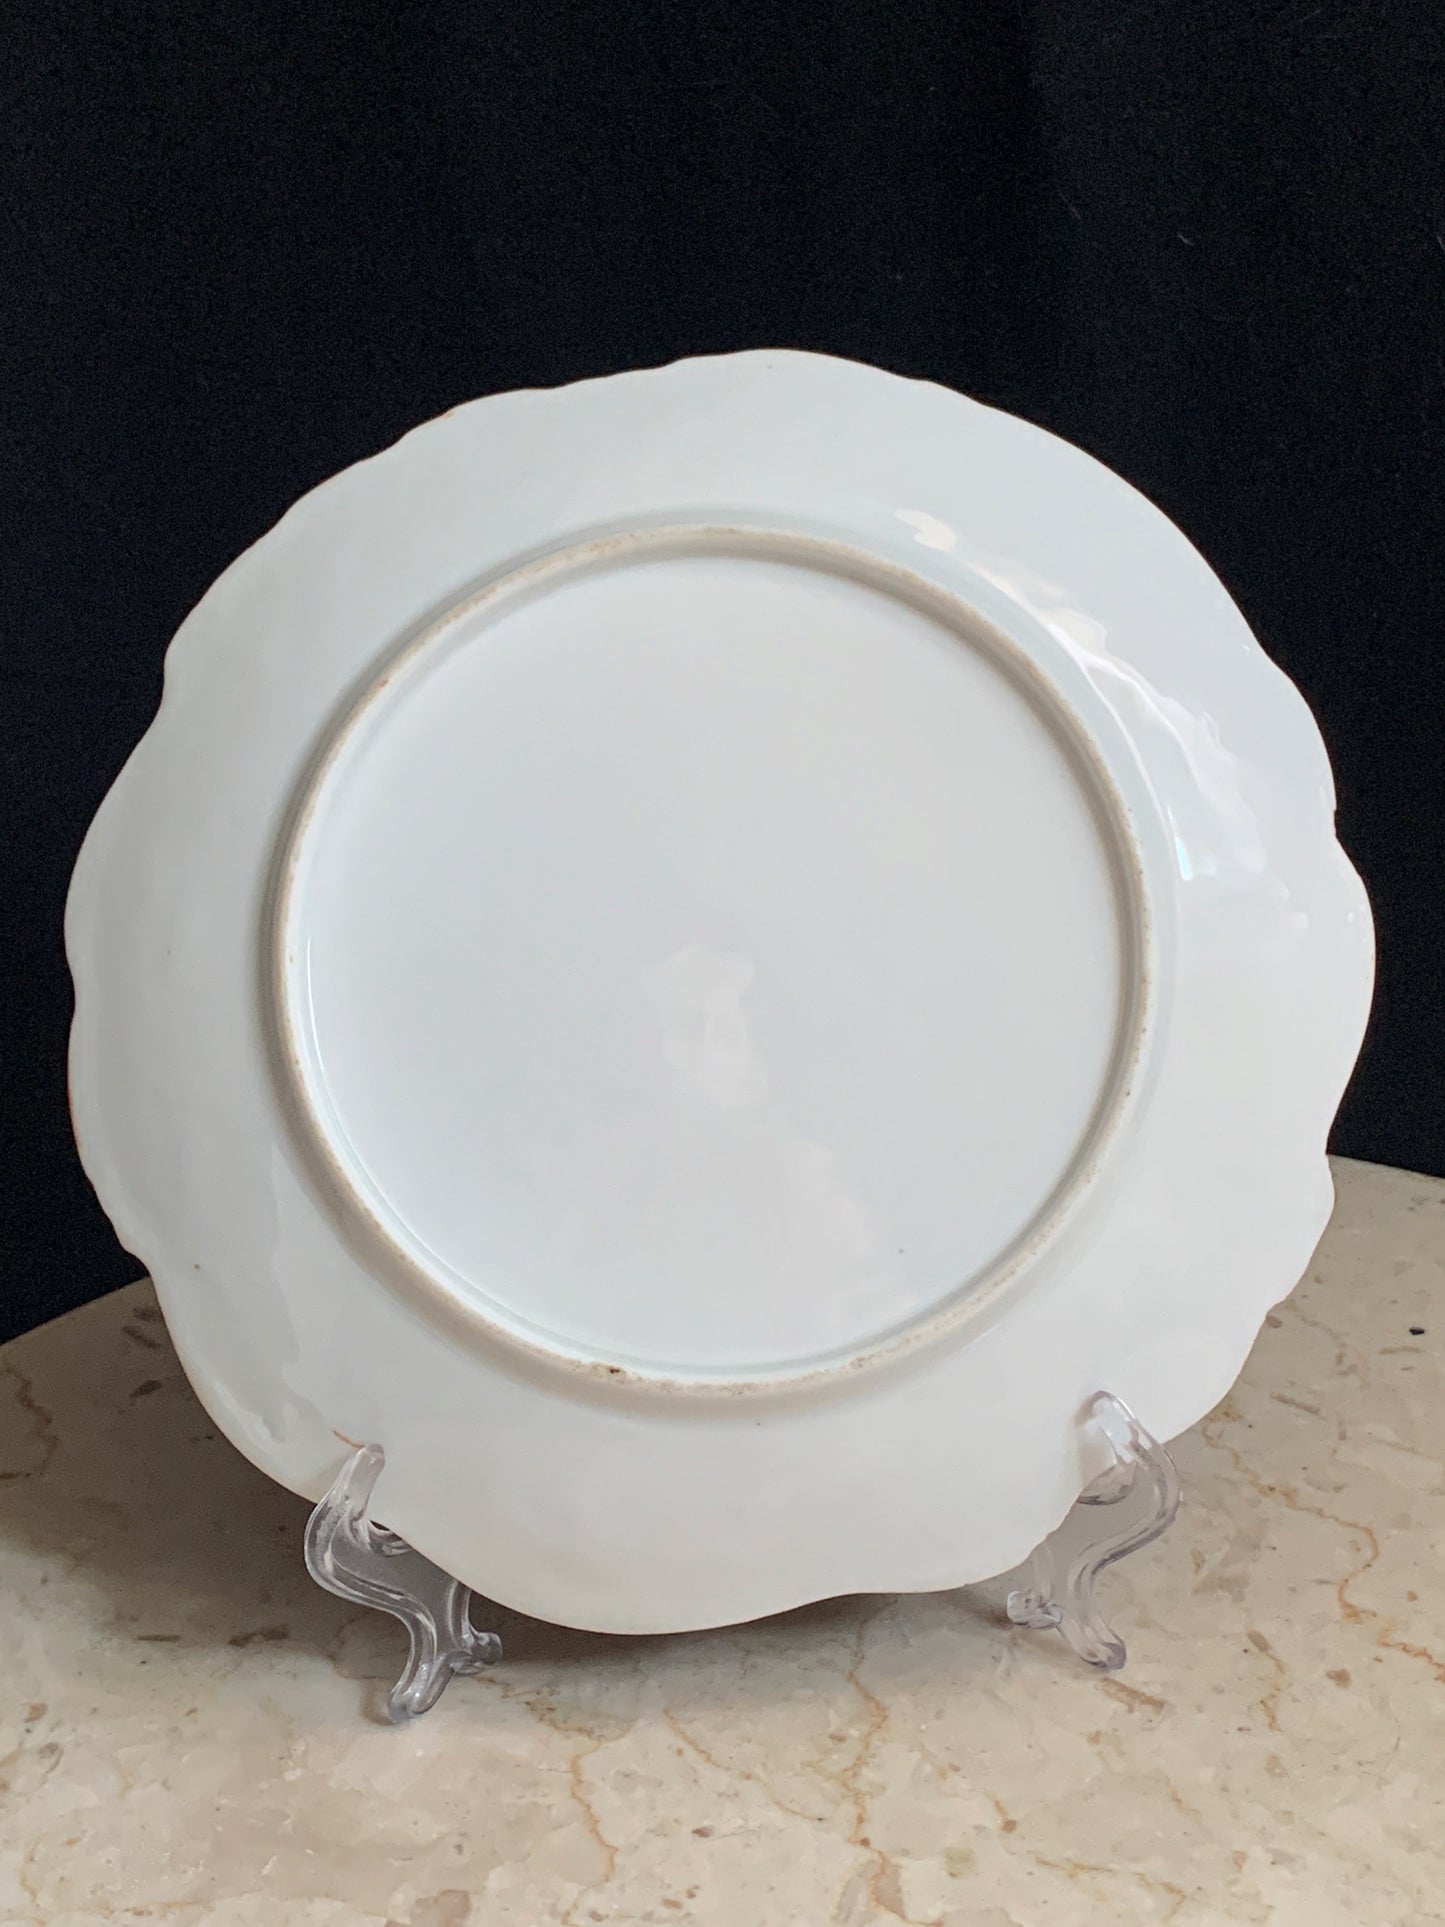 Antique Porcelain Plate